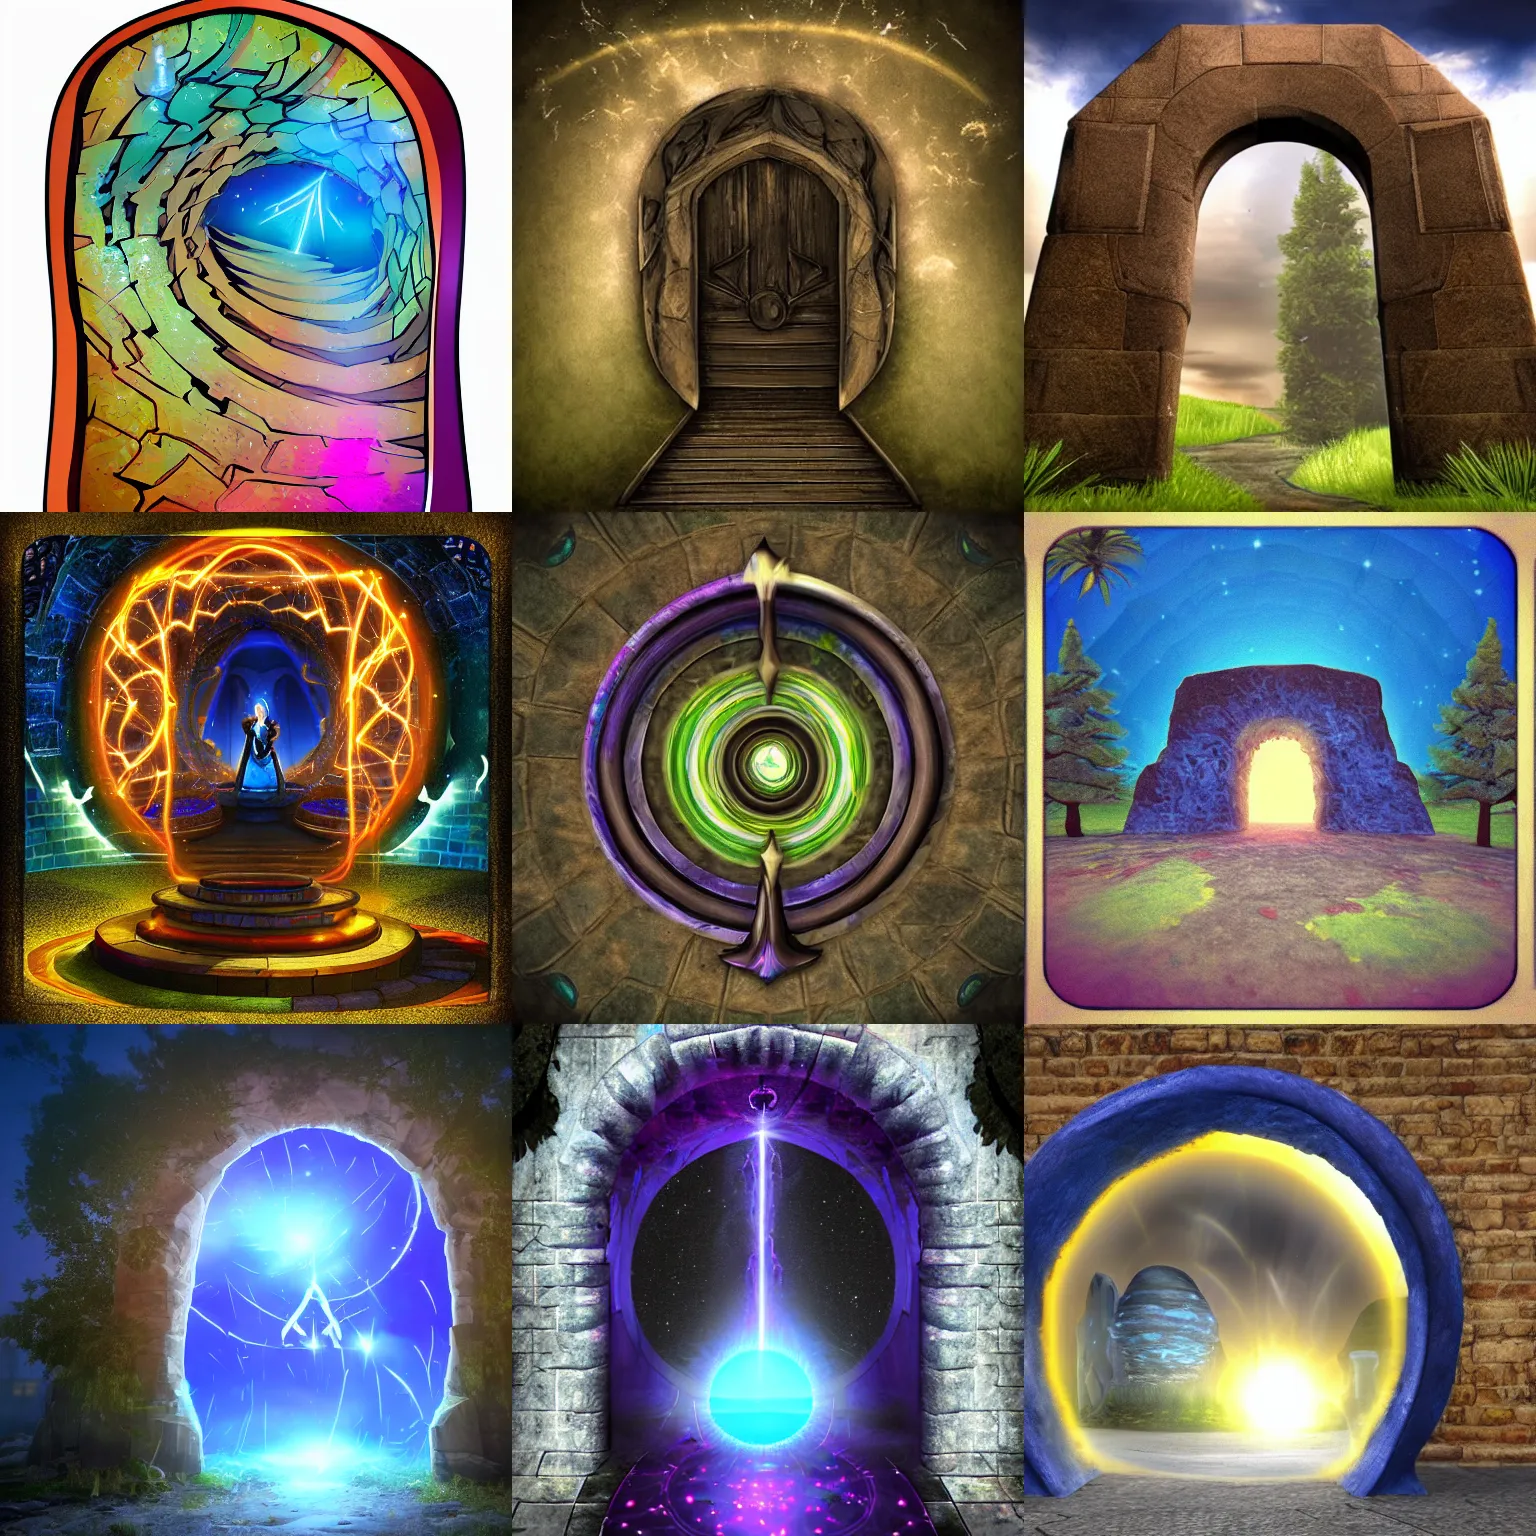 Prompt: Magic portal